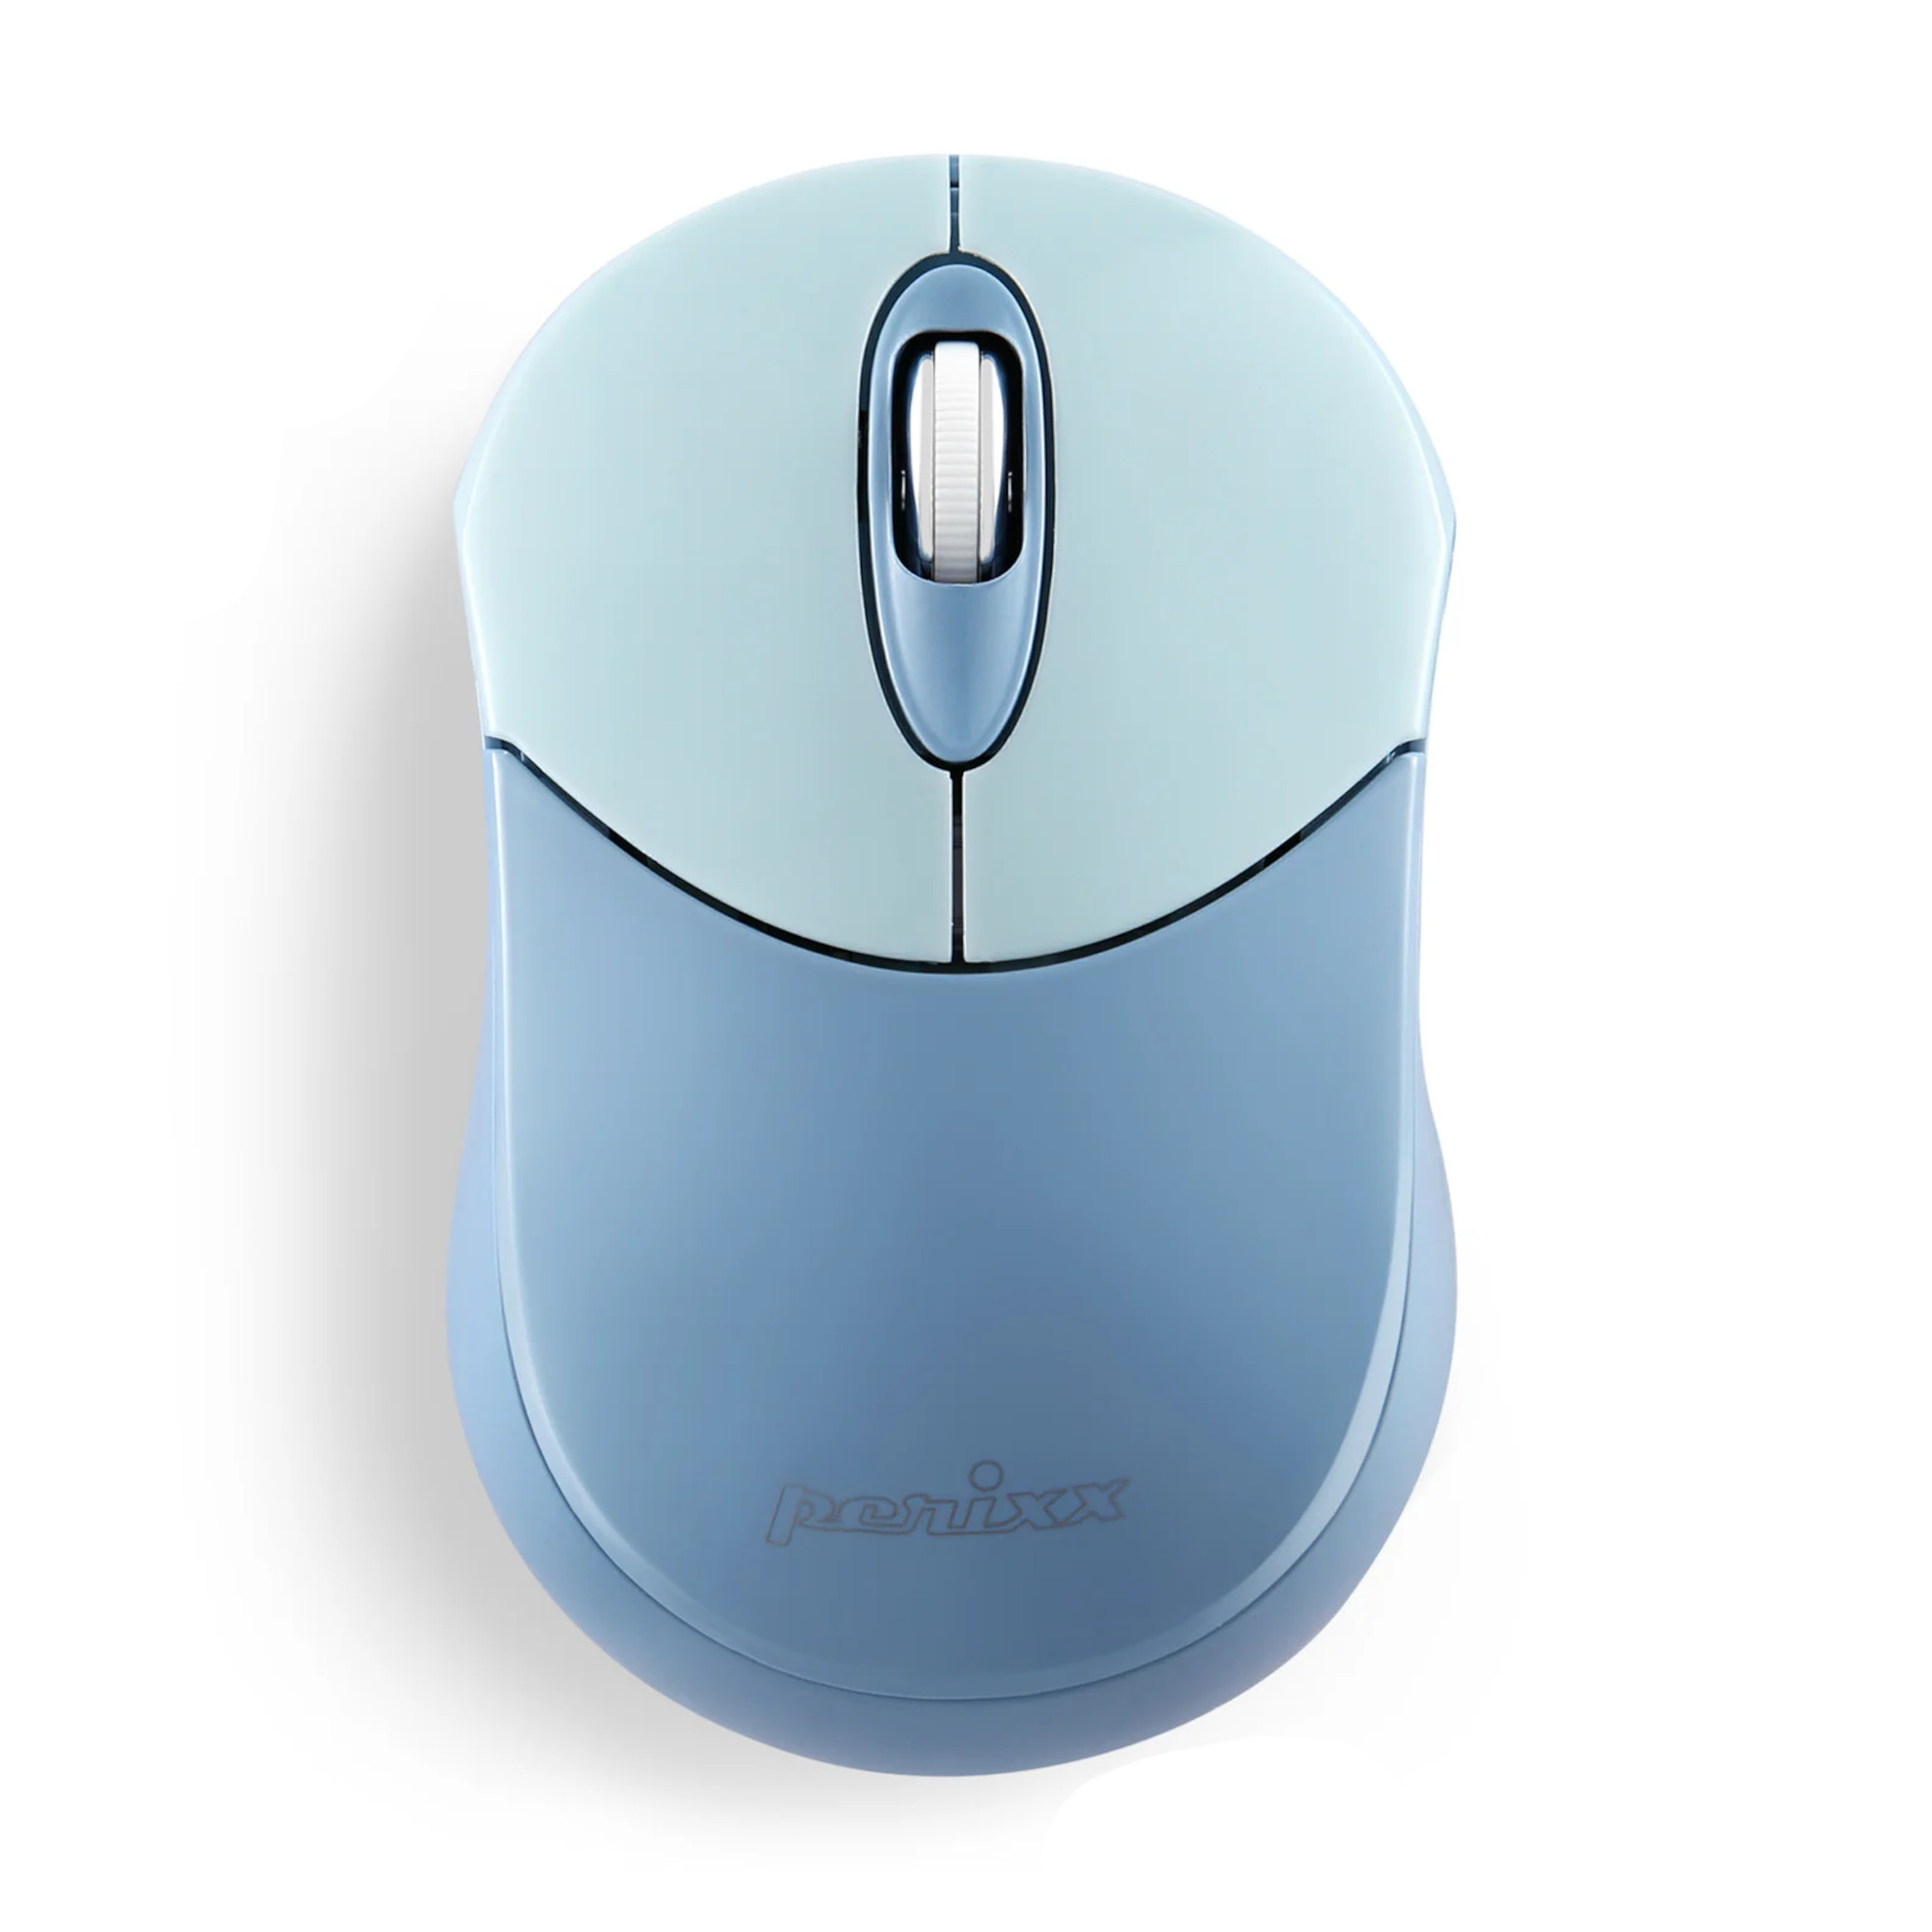 Mini Mouse Ambidiestro Inalmbrico Perixx 802 Bluetooth